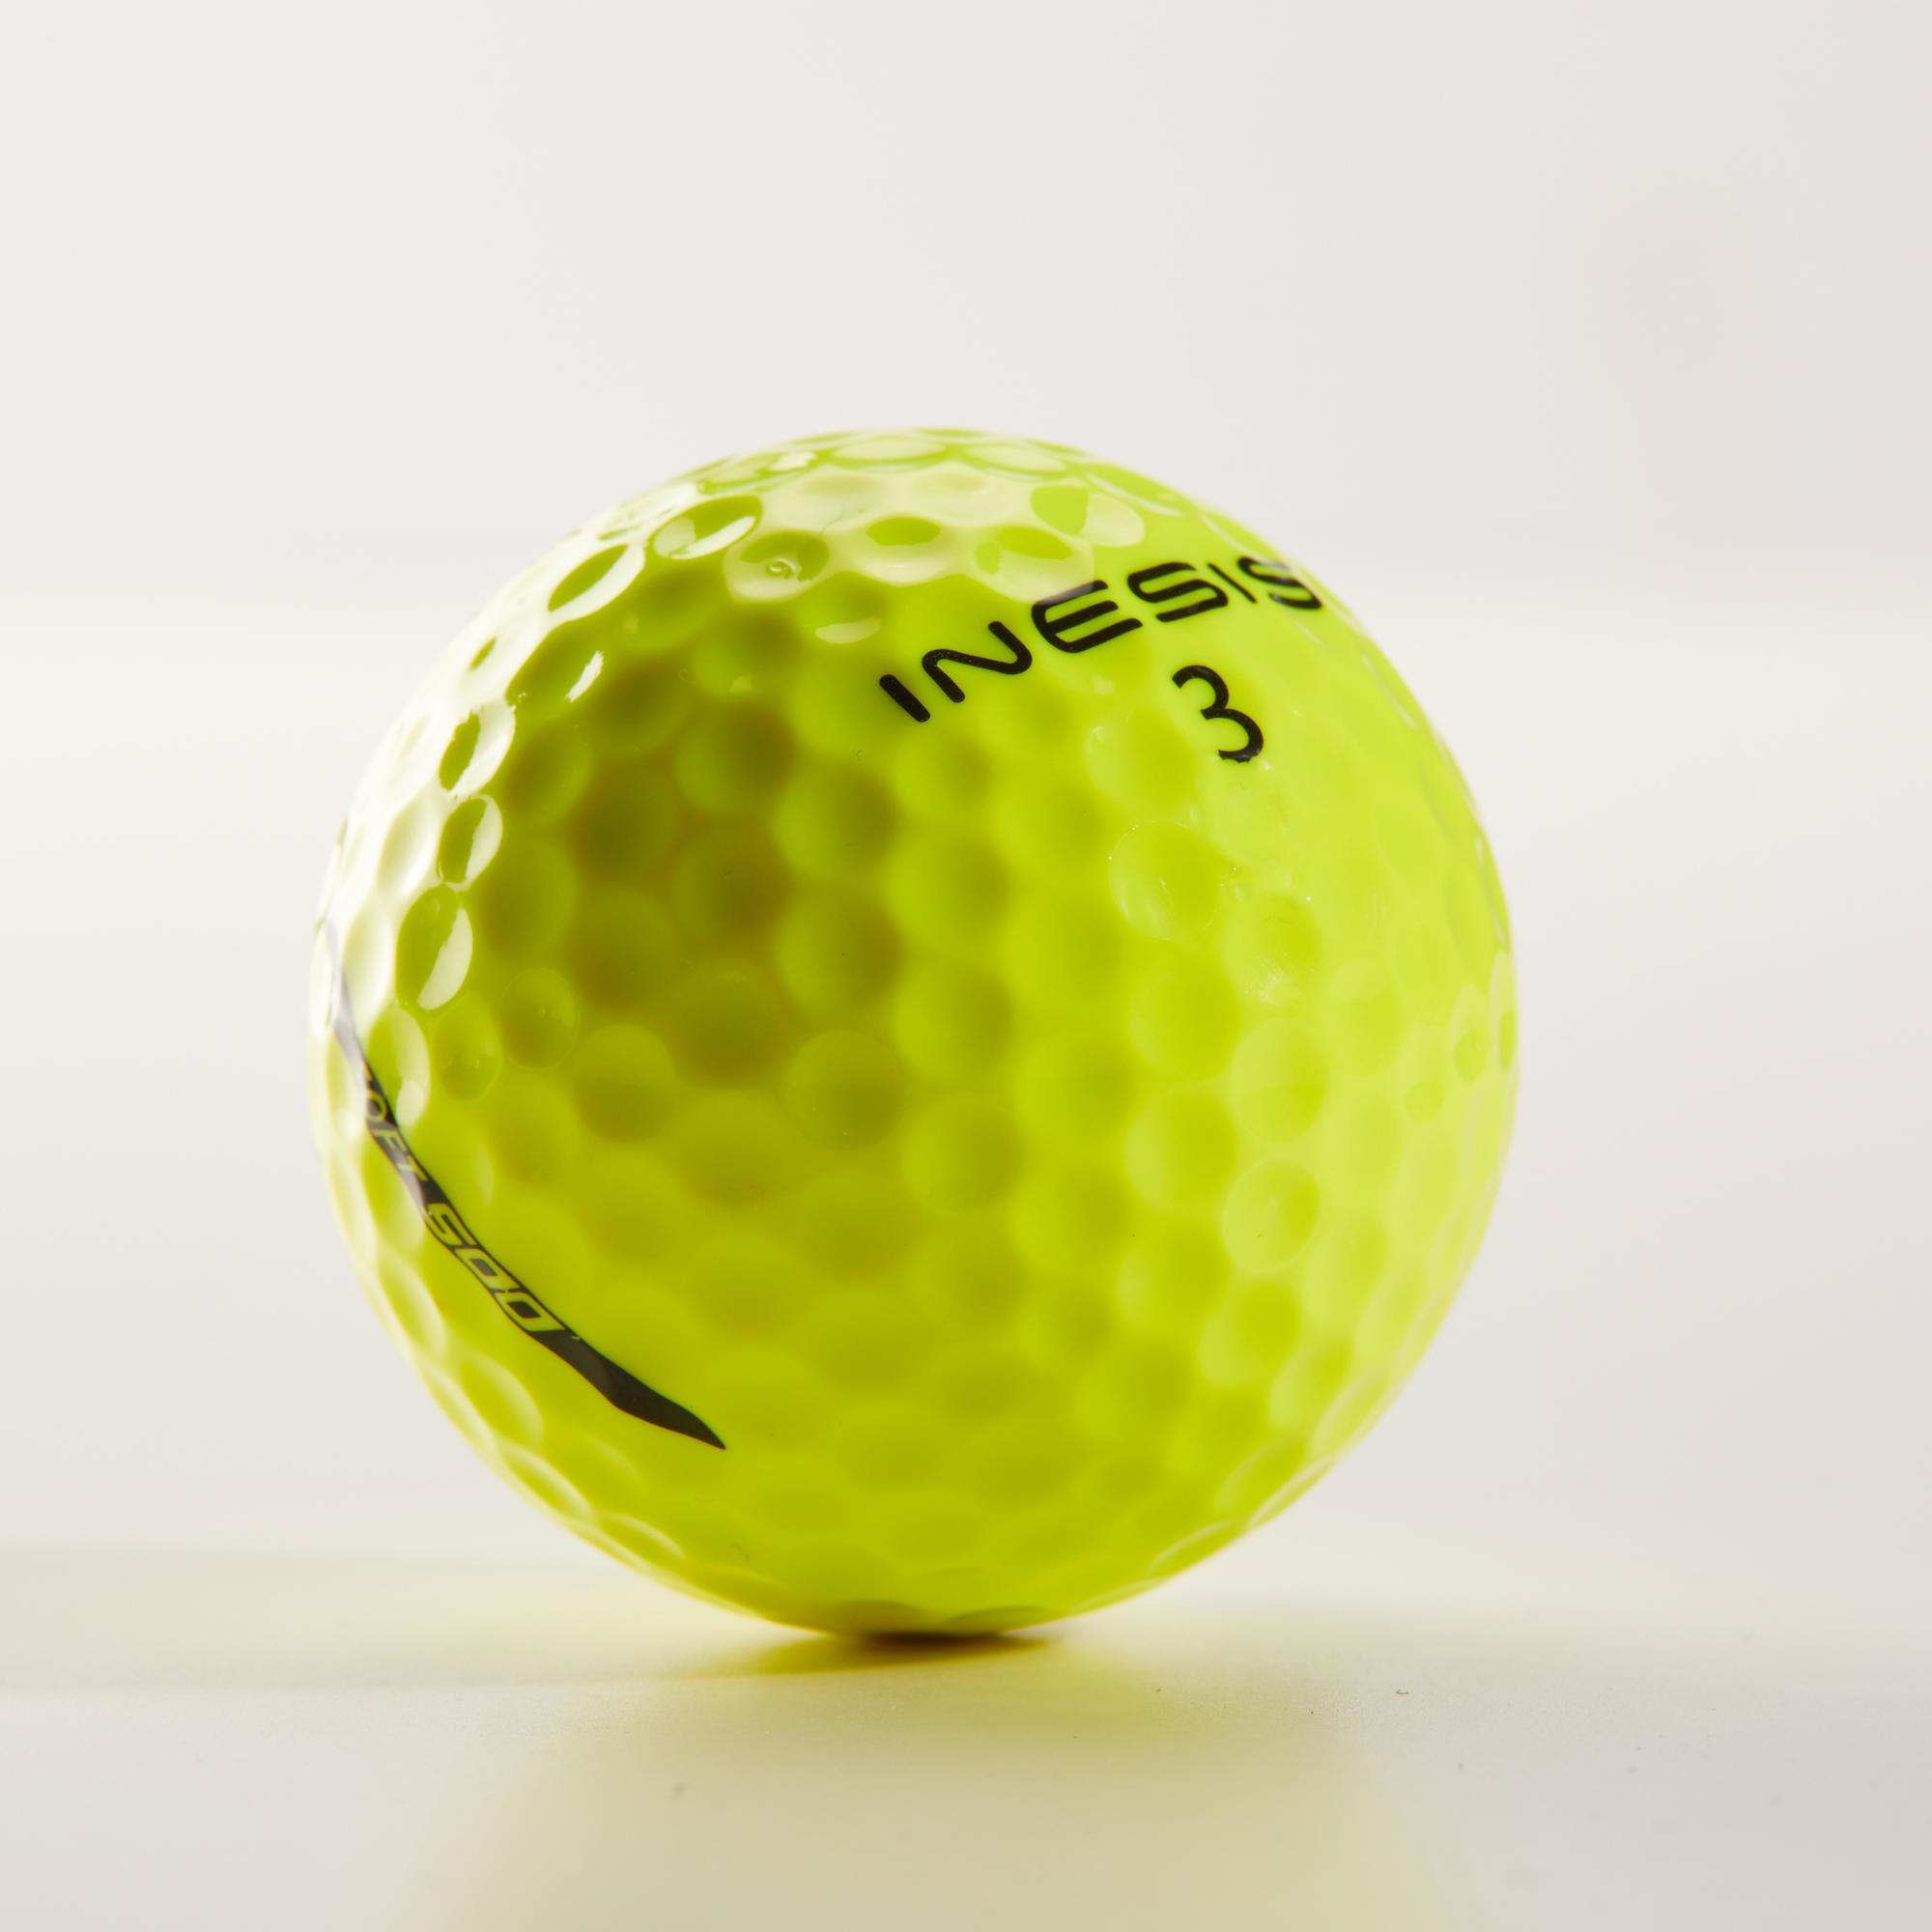 decathlon golf balls review